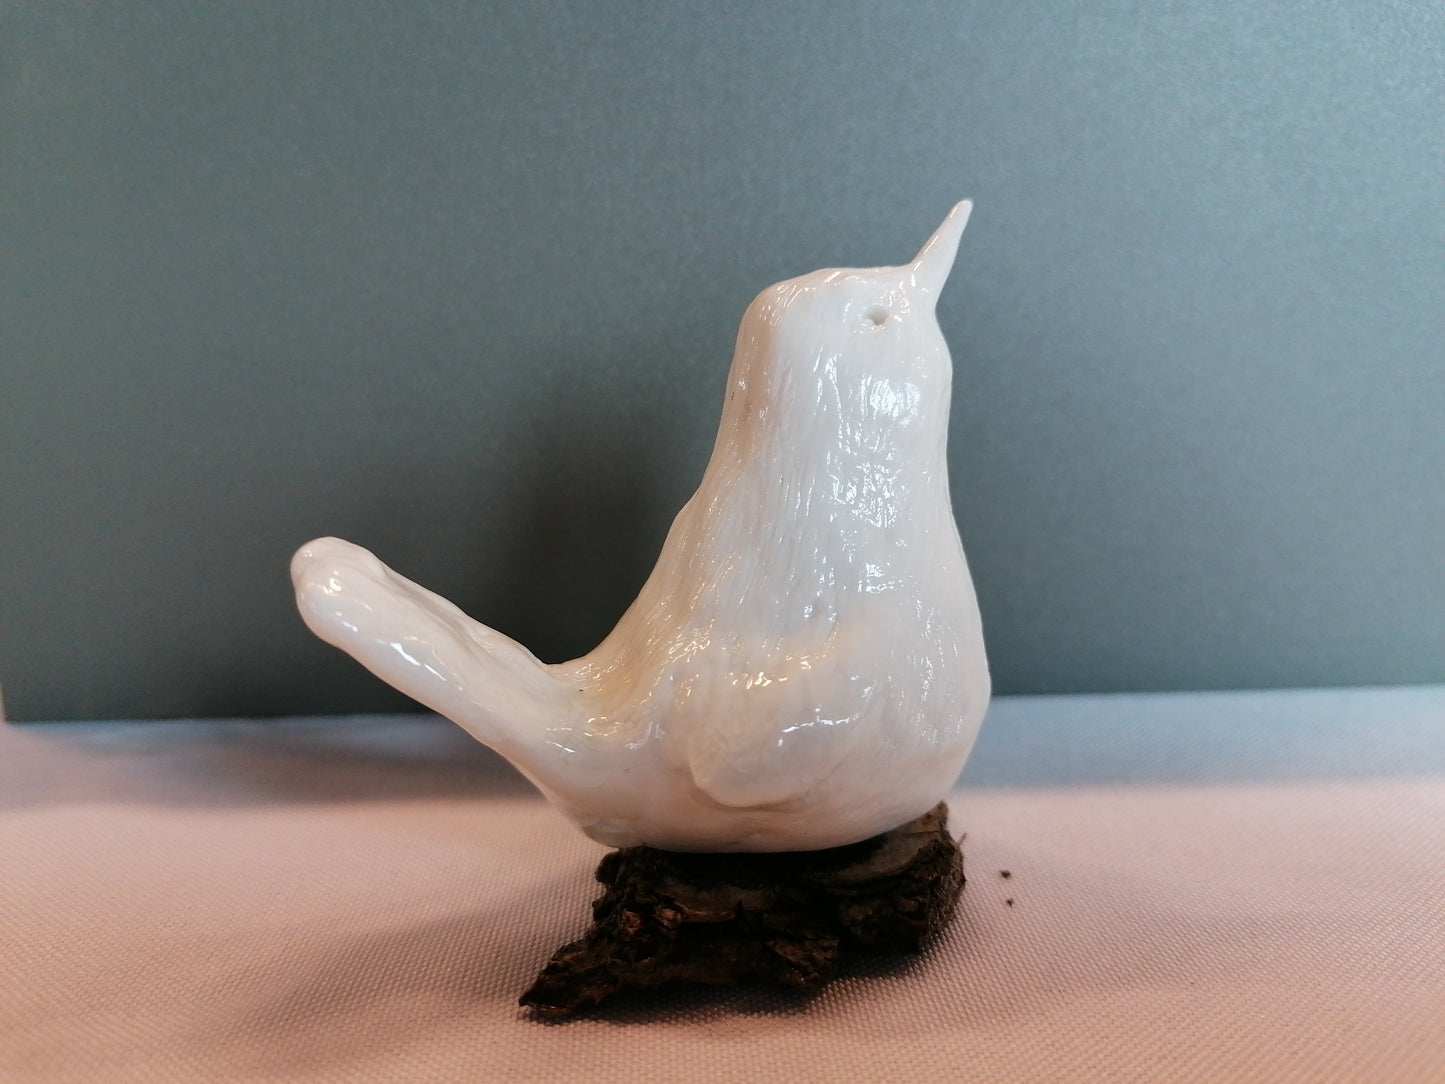 Oiseau de porcelaine n °9 by Sandrine De Zorzi